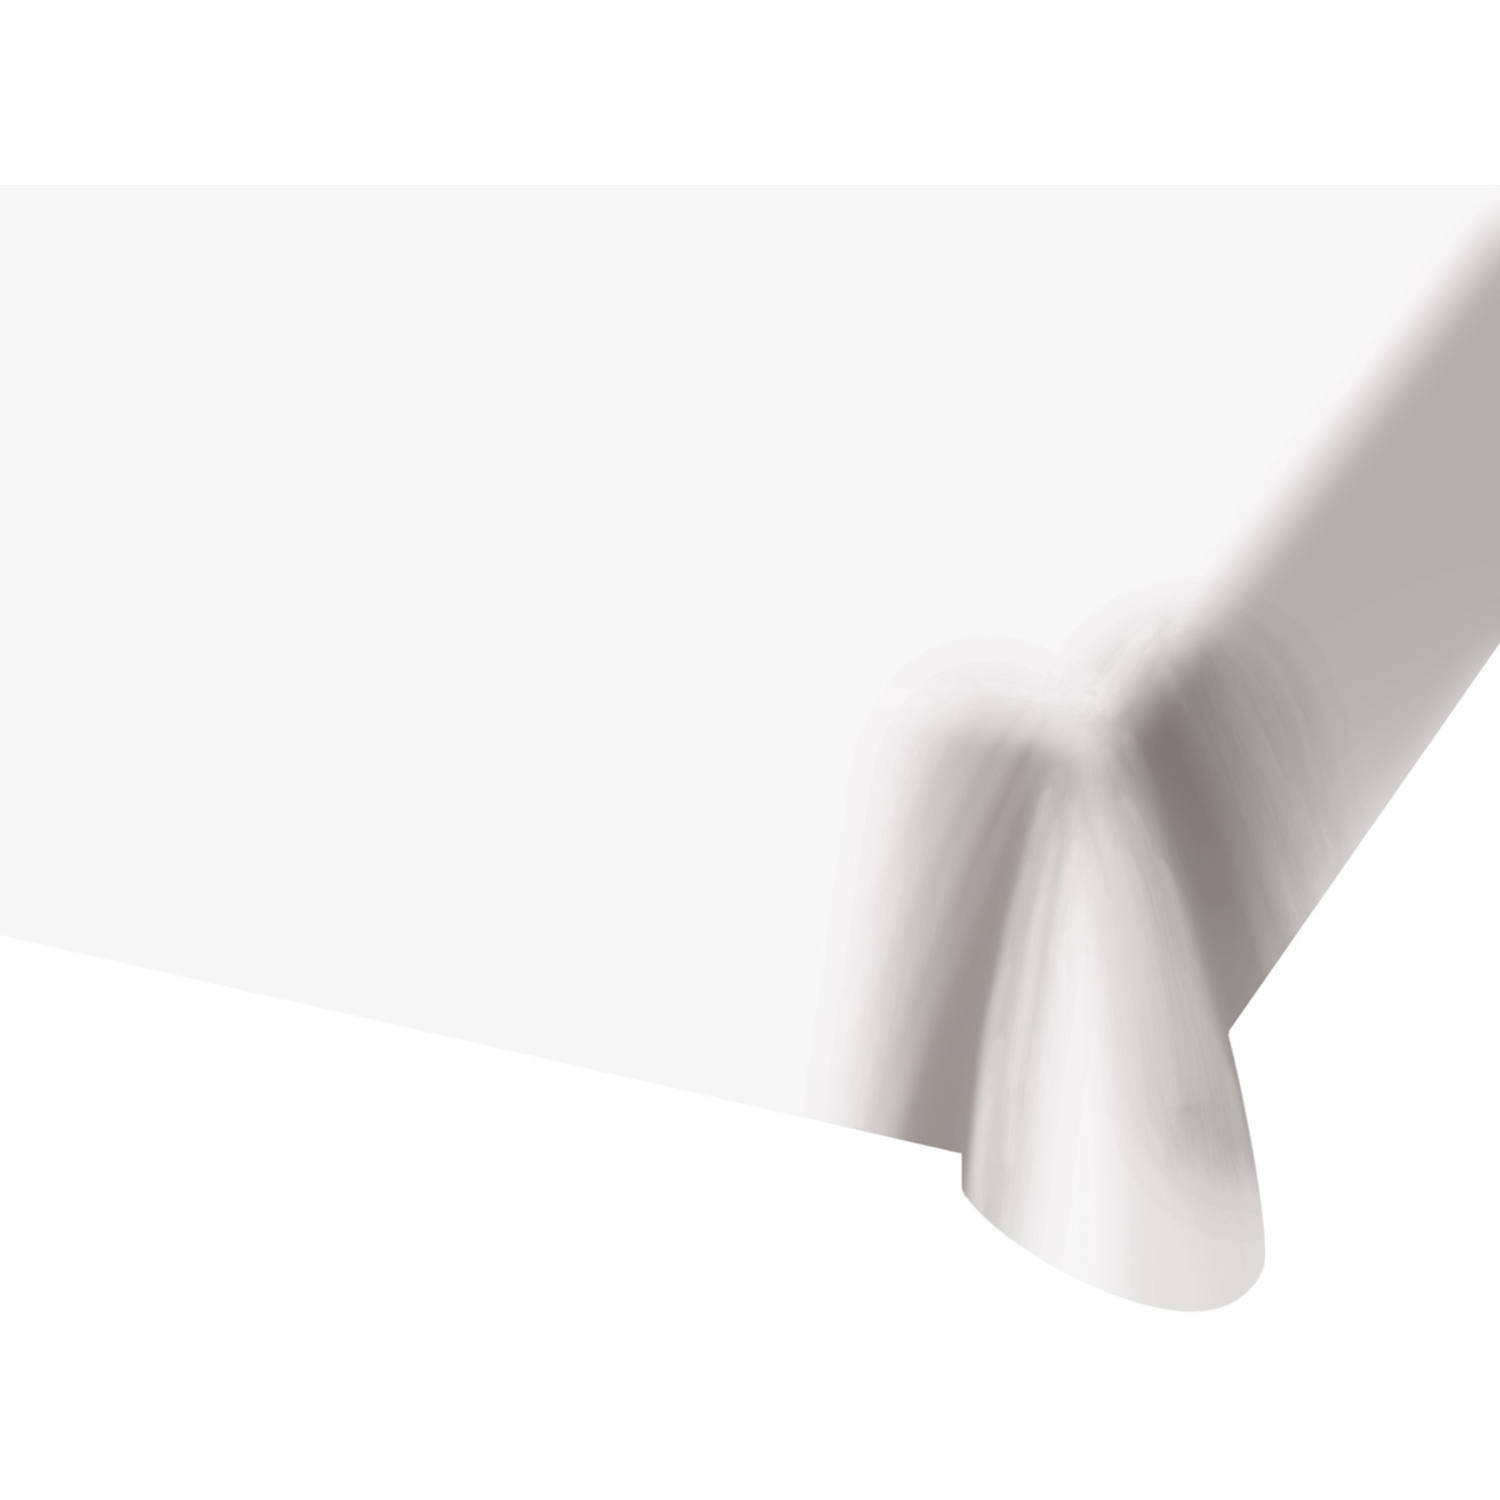 Vermelden Hoofd maximaal Tafelkleed van plastic wit 130 x 180 cm - Feesttafelkleden | Blokker